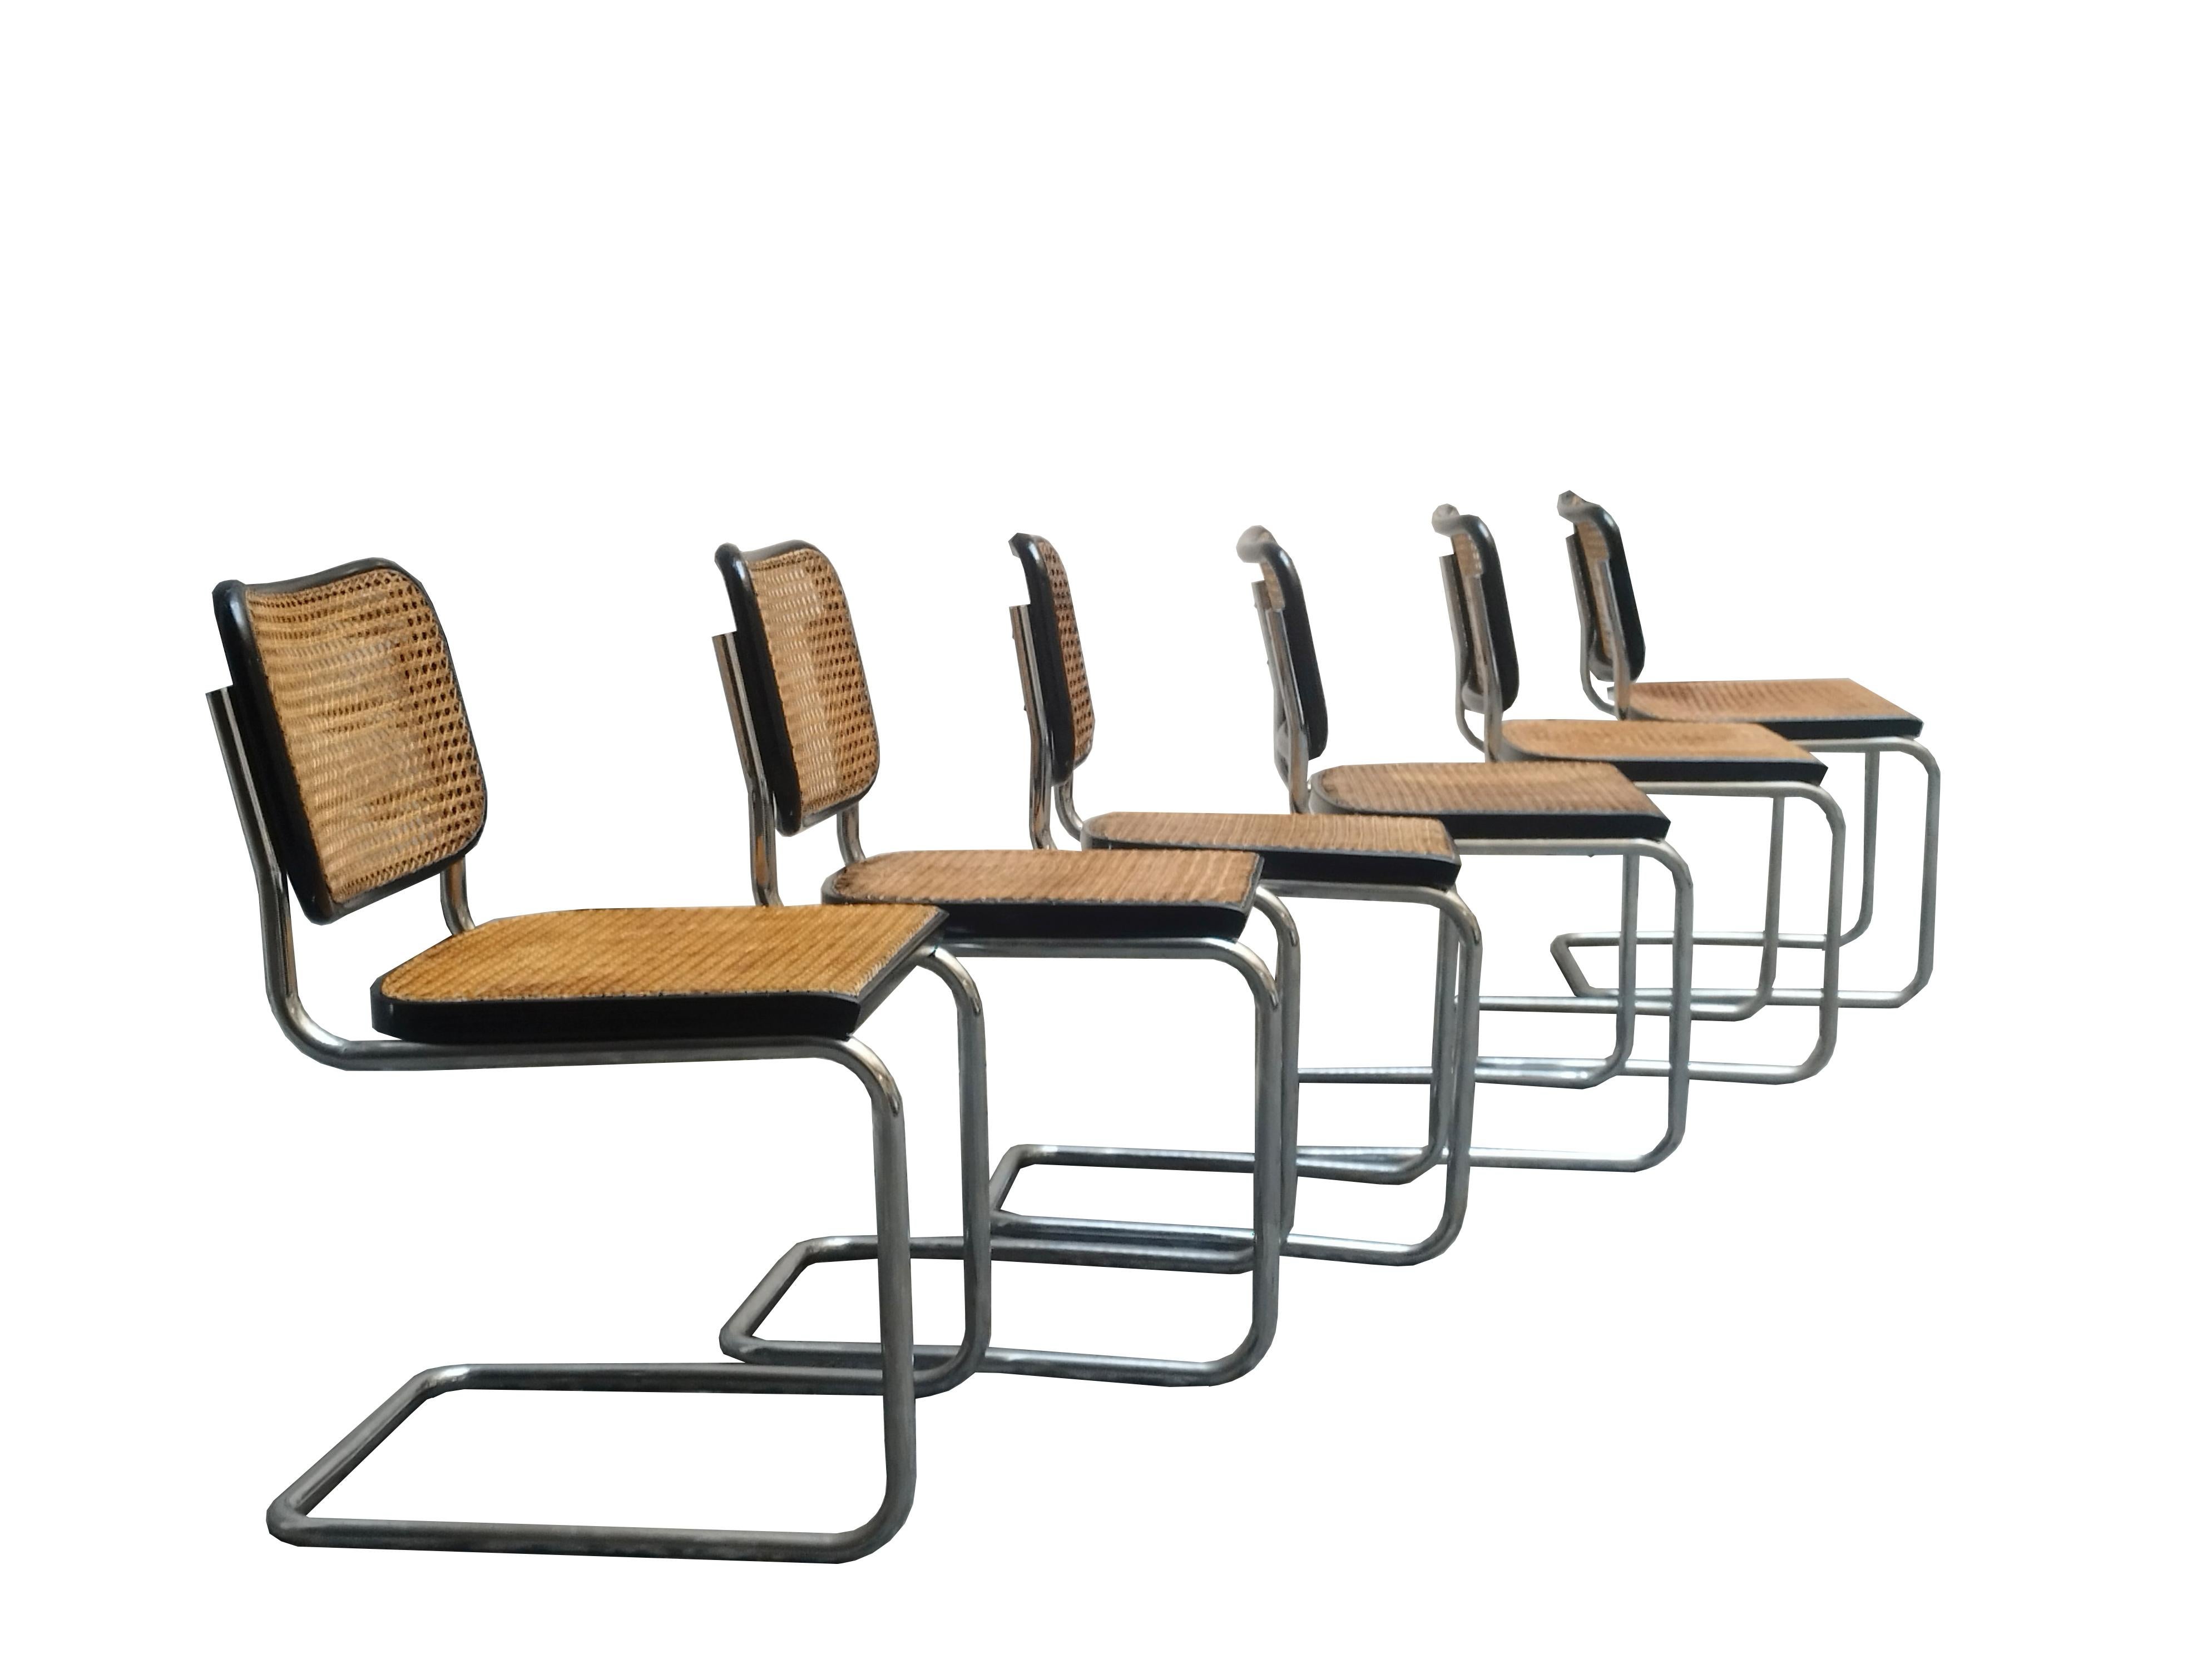 Ensemble de 6 chaises Cesca conçues par Marcel Breuer, produites par Gavina en 1960.
Les chaises présentent de légères traces d'usure, les sièges sont en paille de Vienne d'origine.
L'association de la paille de Vienne et du métal tubulaire, de la